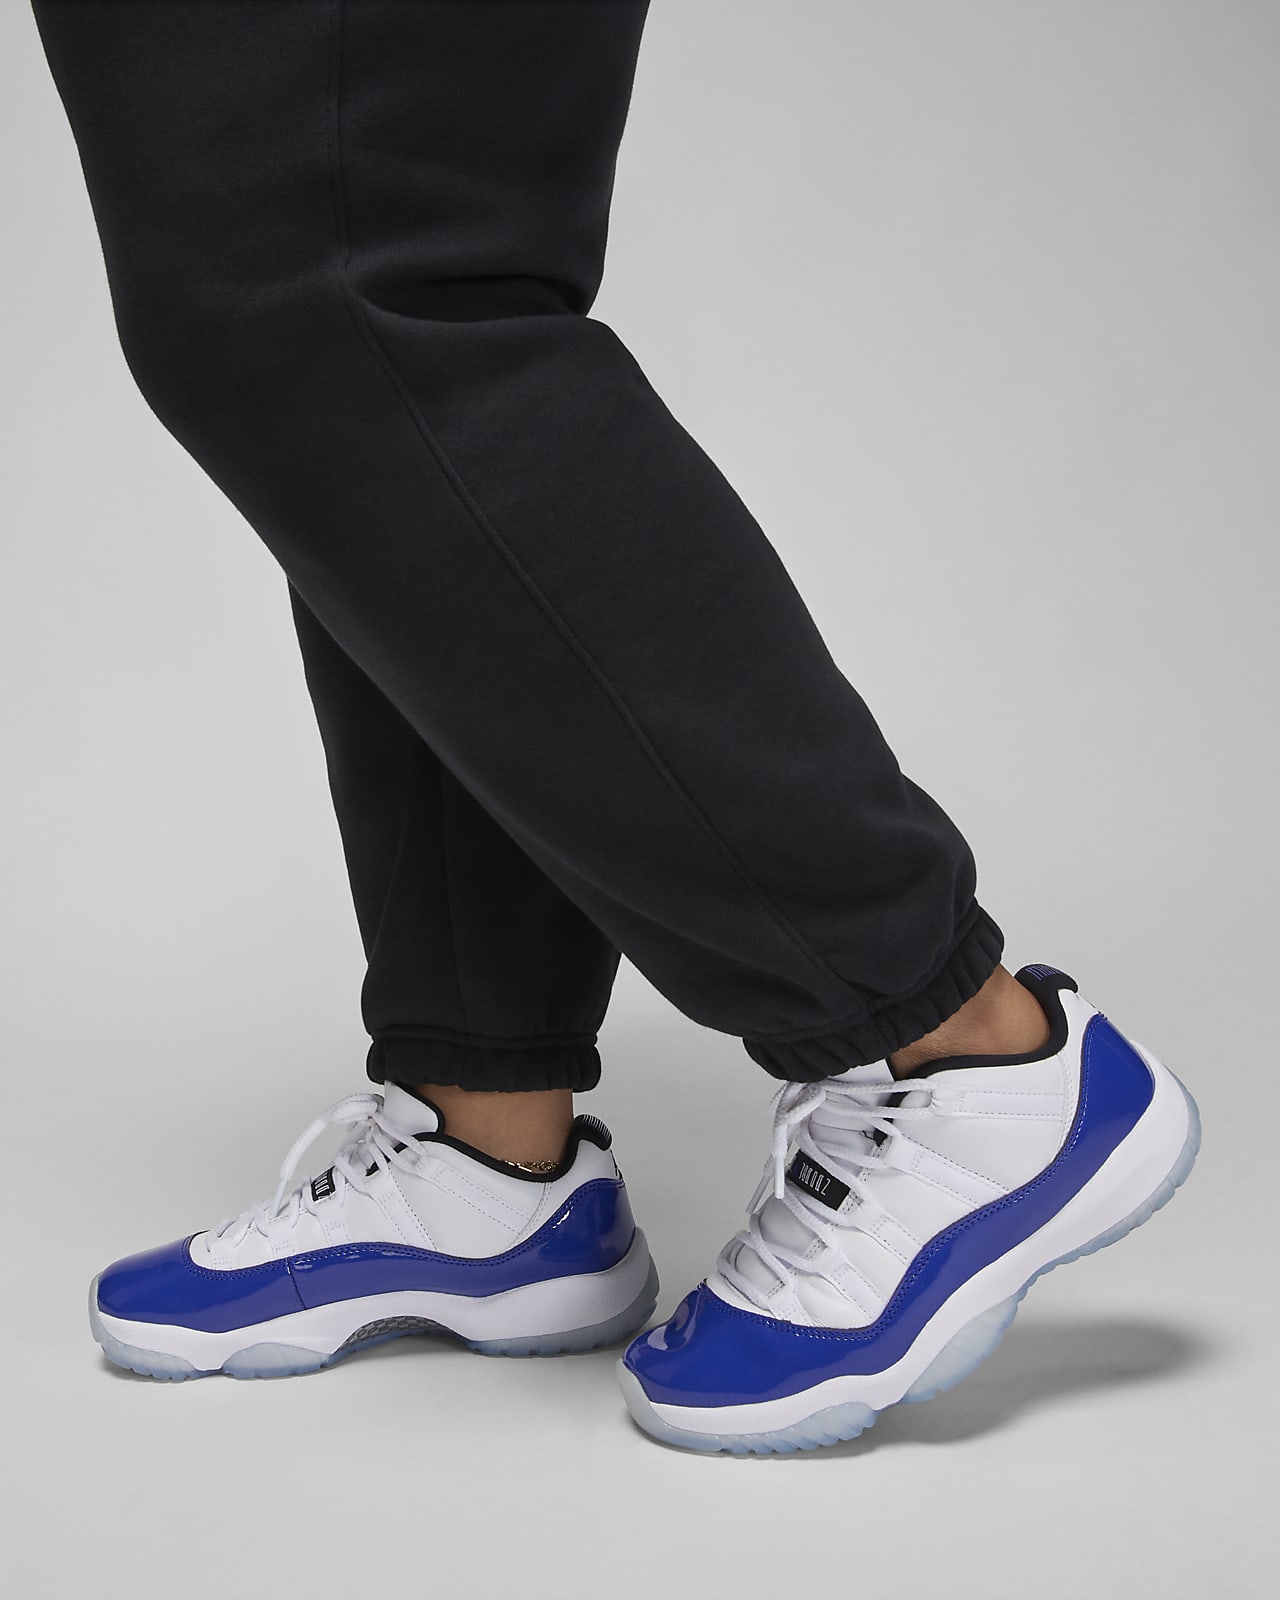 Jordan Brooklyn Women's Fleece Trousers (Plus Size). Nike HR